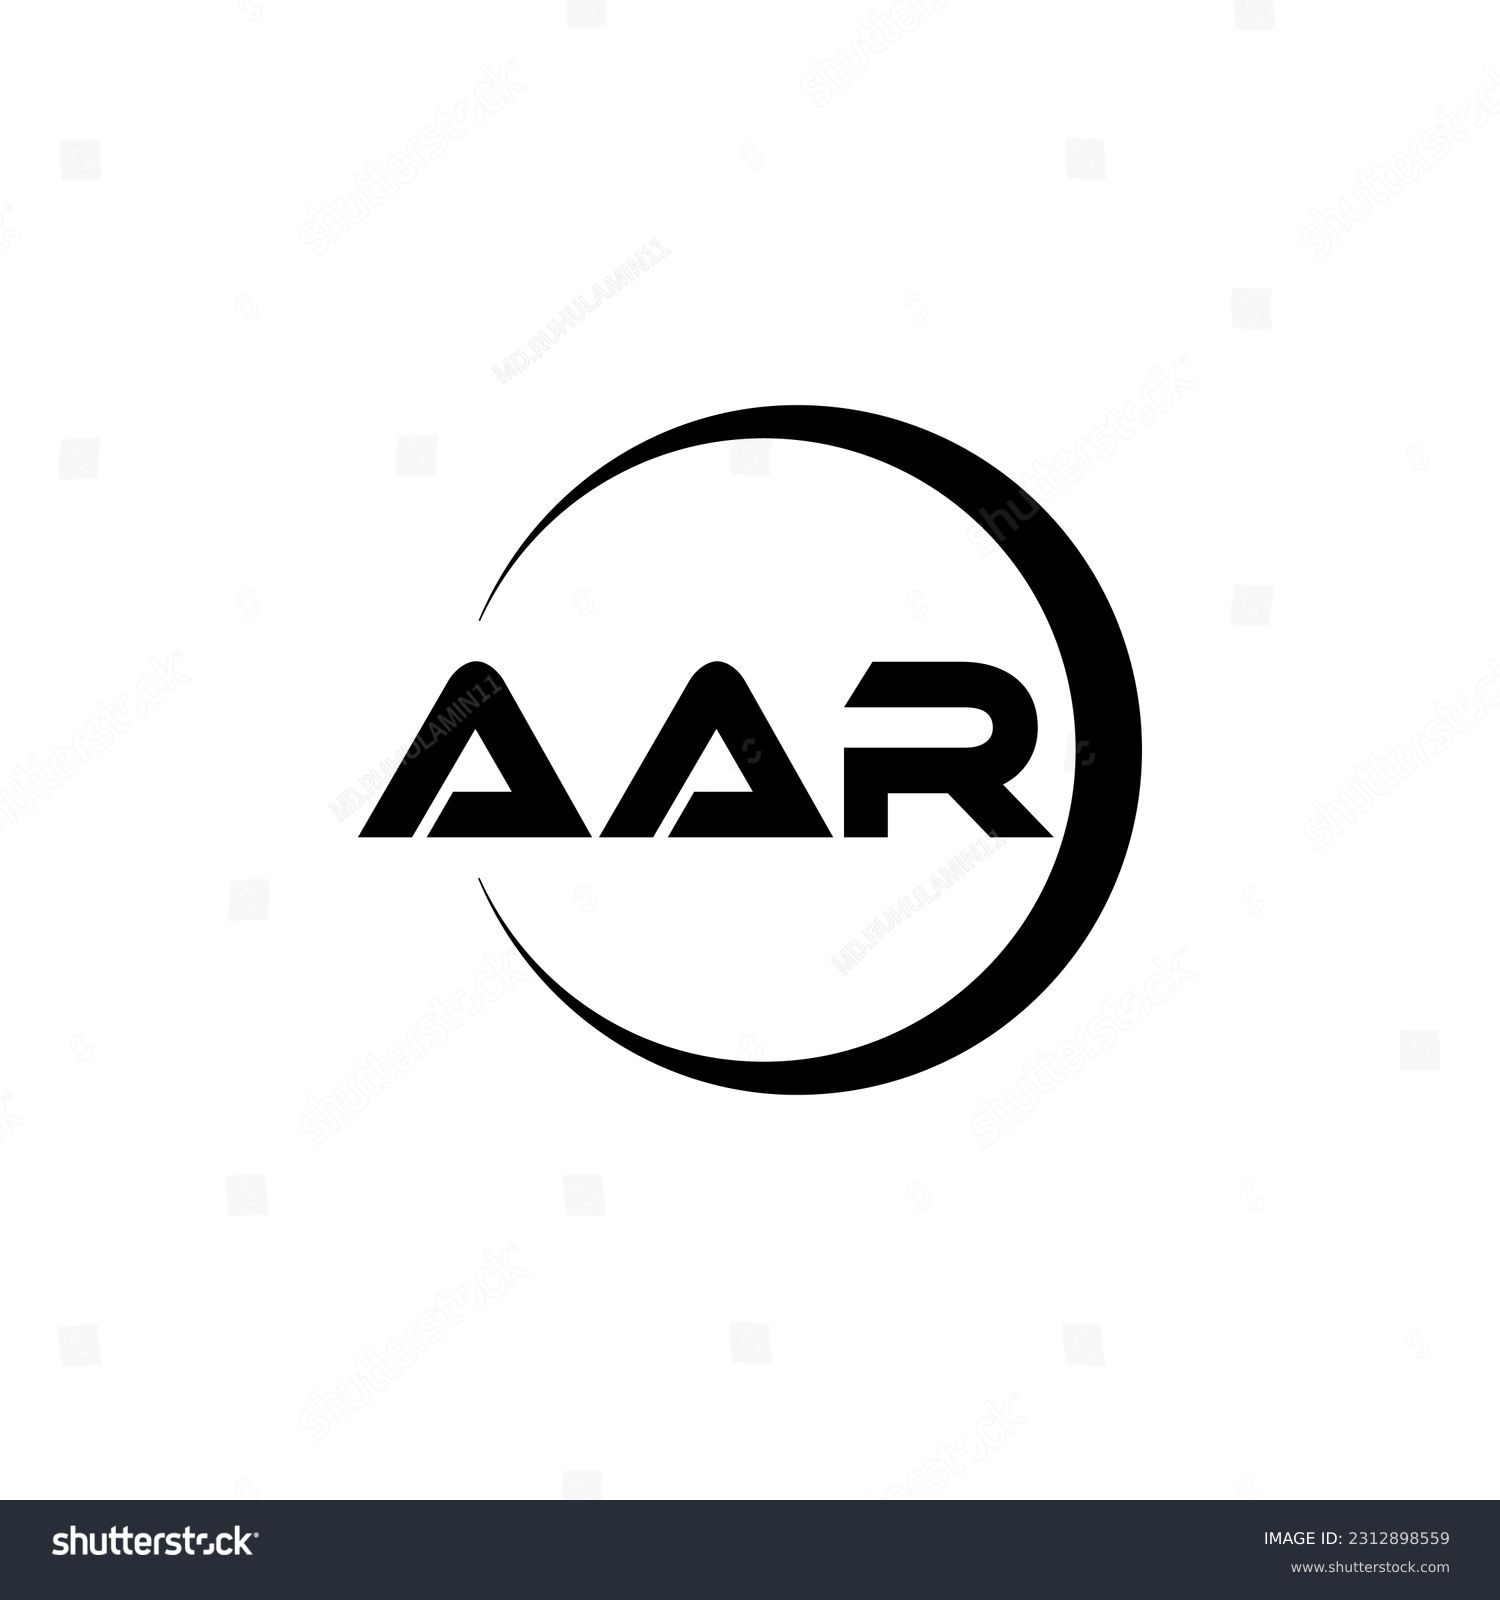 SVG of AAR letter logo design in illustration. Vector logo, calligraphy designs for logo, Poster, Invitation, etc. svg